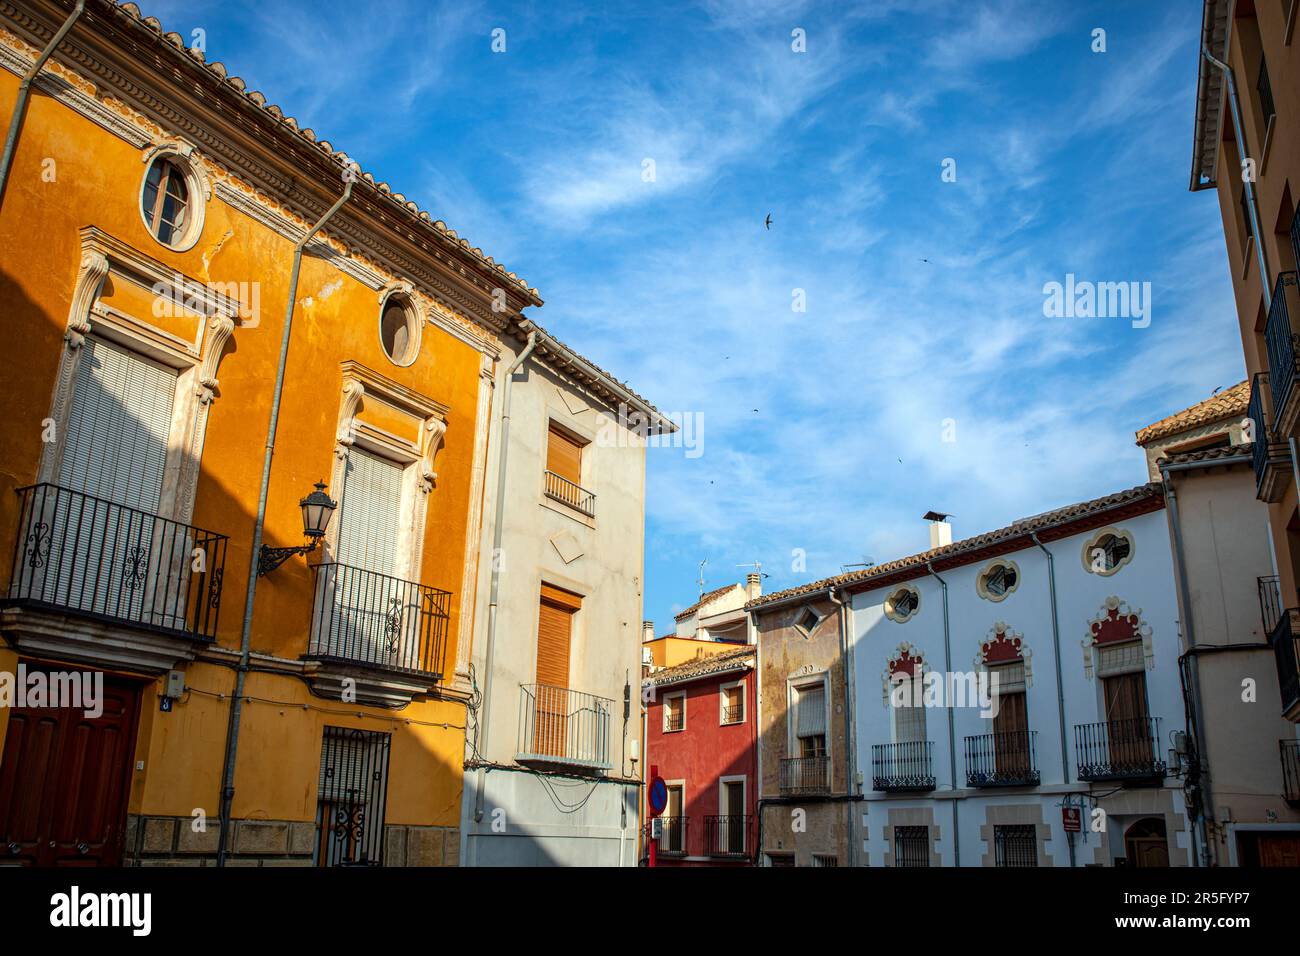 Façades de maisons colorées typiques dans le centre historique de Caravaca de la Cruz, à Murcie, en Espagne, avec des hirondelles volant dans le ciel bleu Banque D'Images